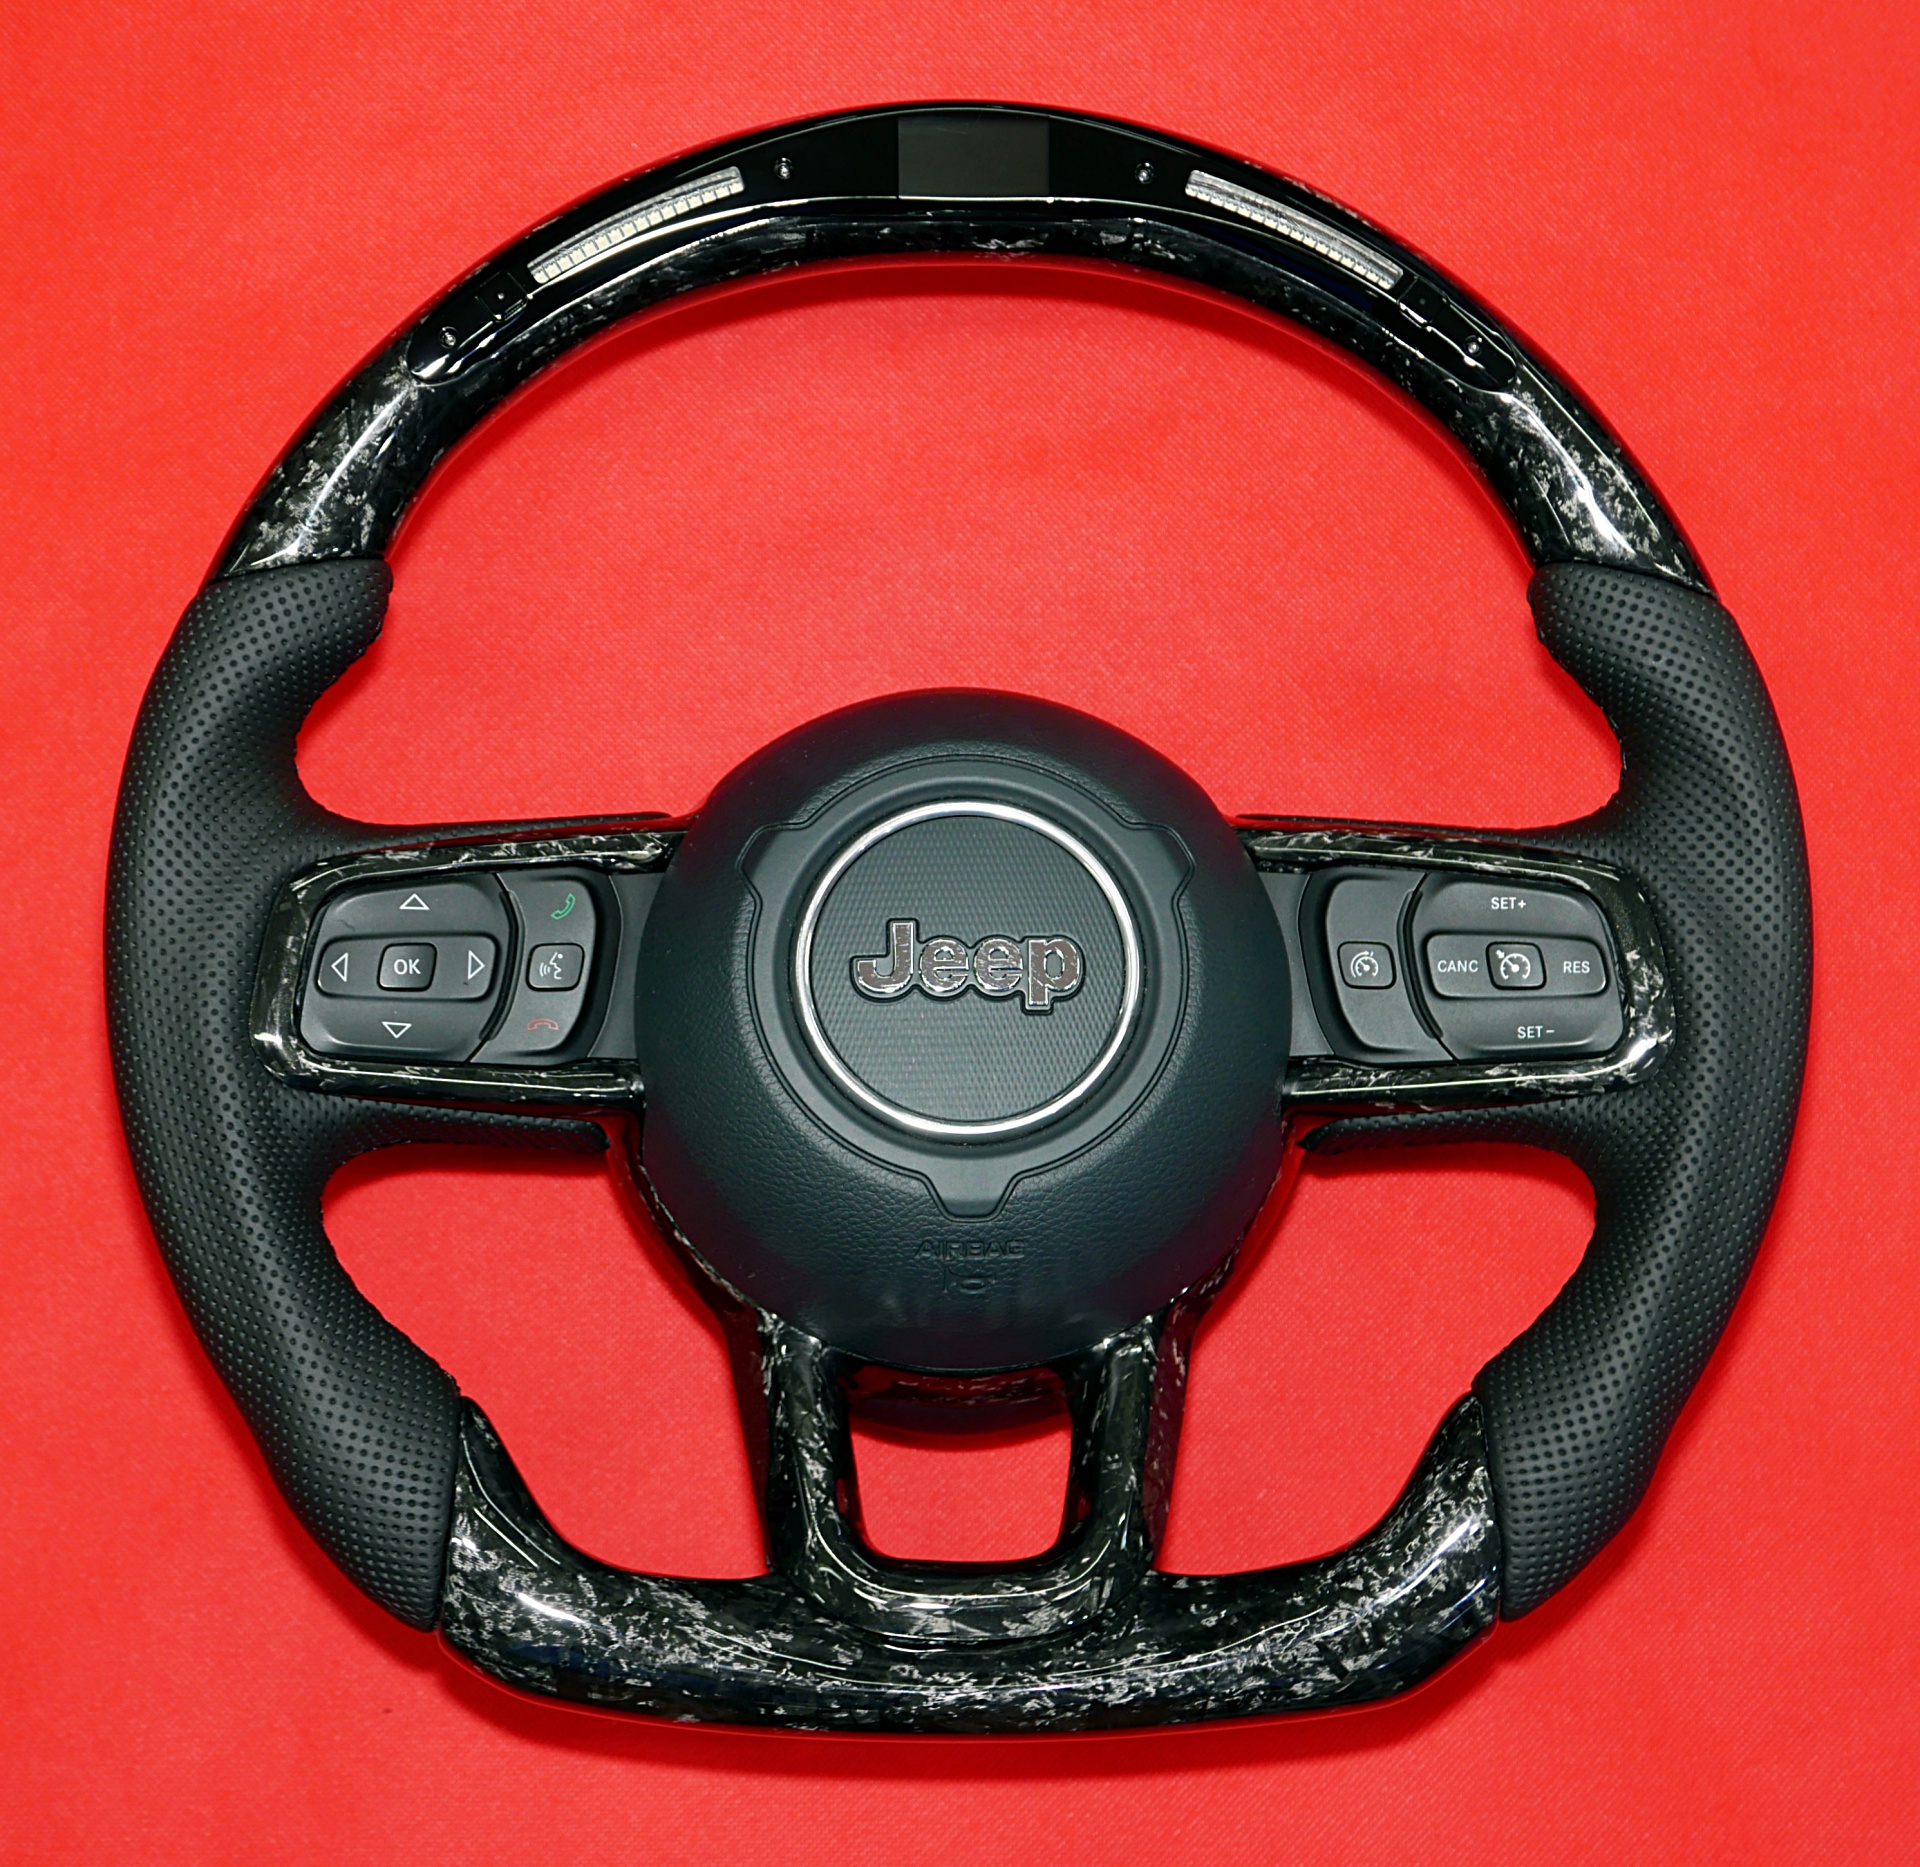 Jeep carbon LED custom steering wheel